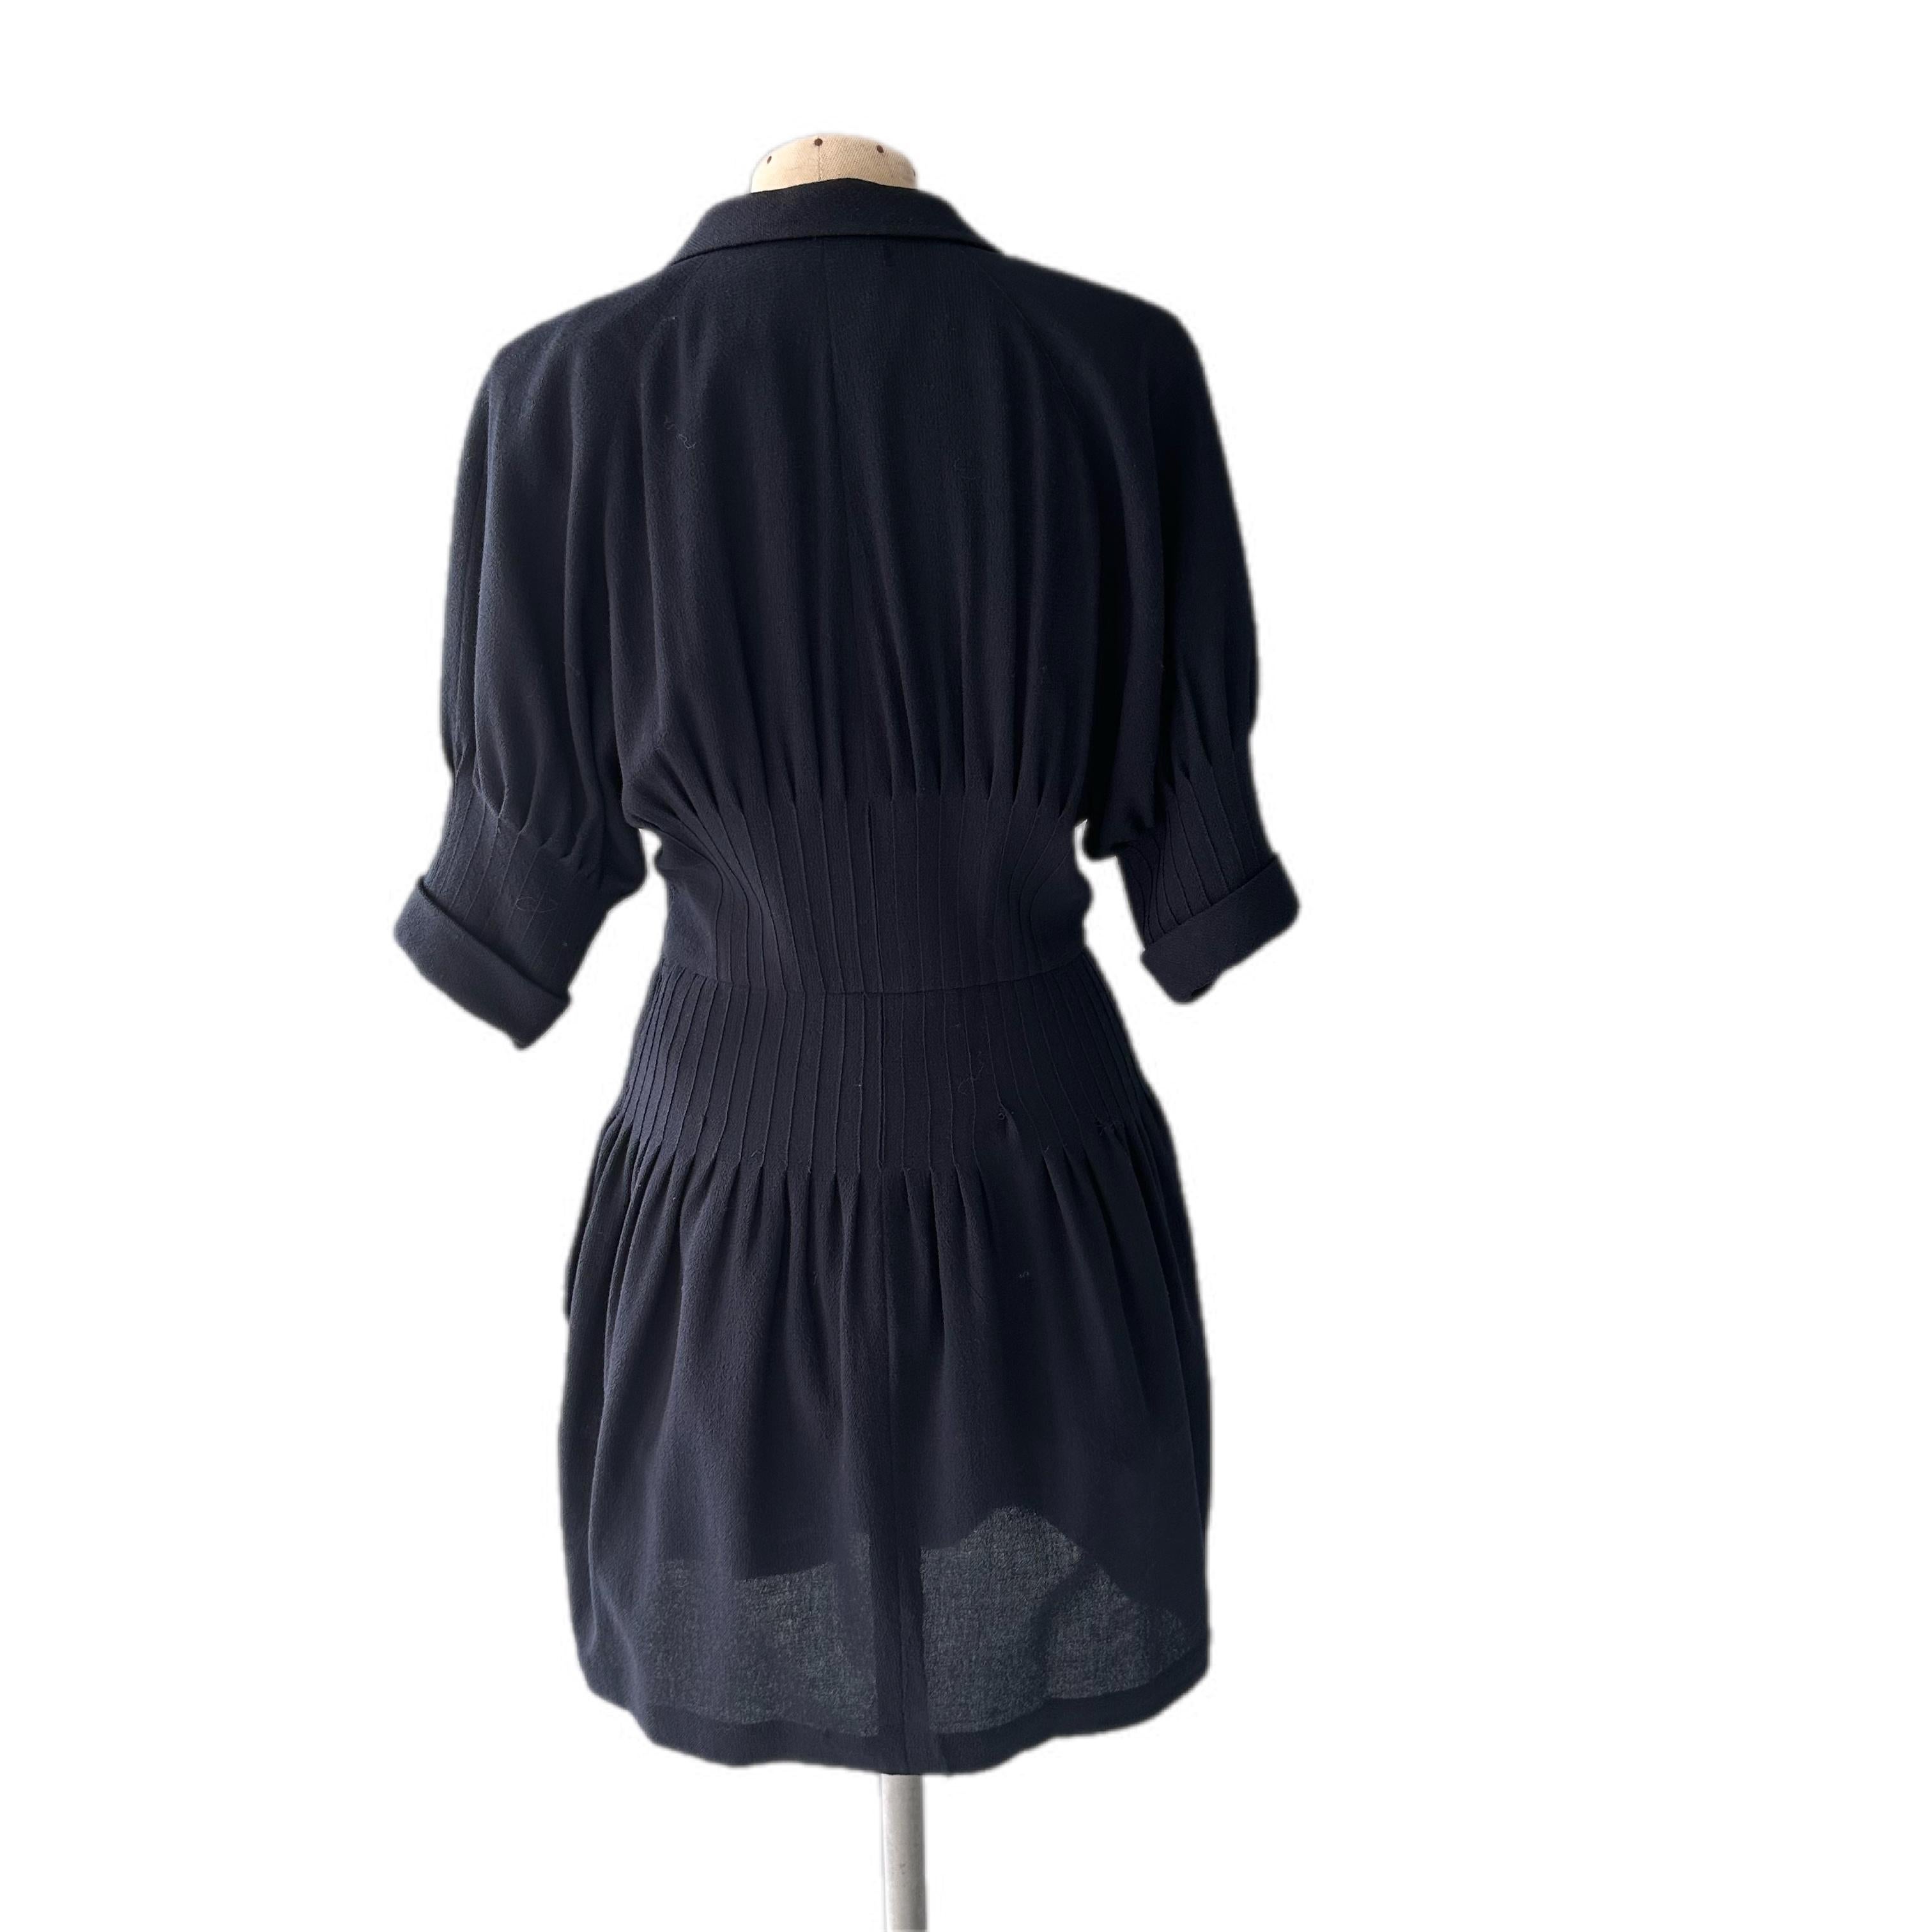 Vielseitiges und elegantes Vintage-Kleid von Chanel 
Vorne mit Haken- und Ösenverschluss, mit halben Ärmeln. Das Kleid wird in der Taille geschnürt, um die Form zu unterstreichen und eine perfekte Shilouette zu schaffen.
Seitentaschen, das Etikett